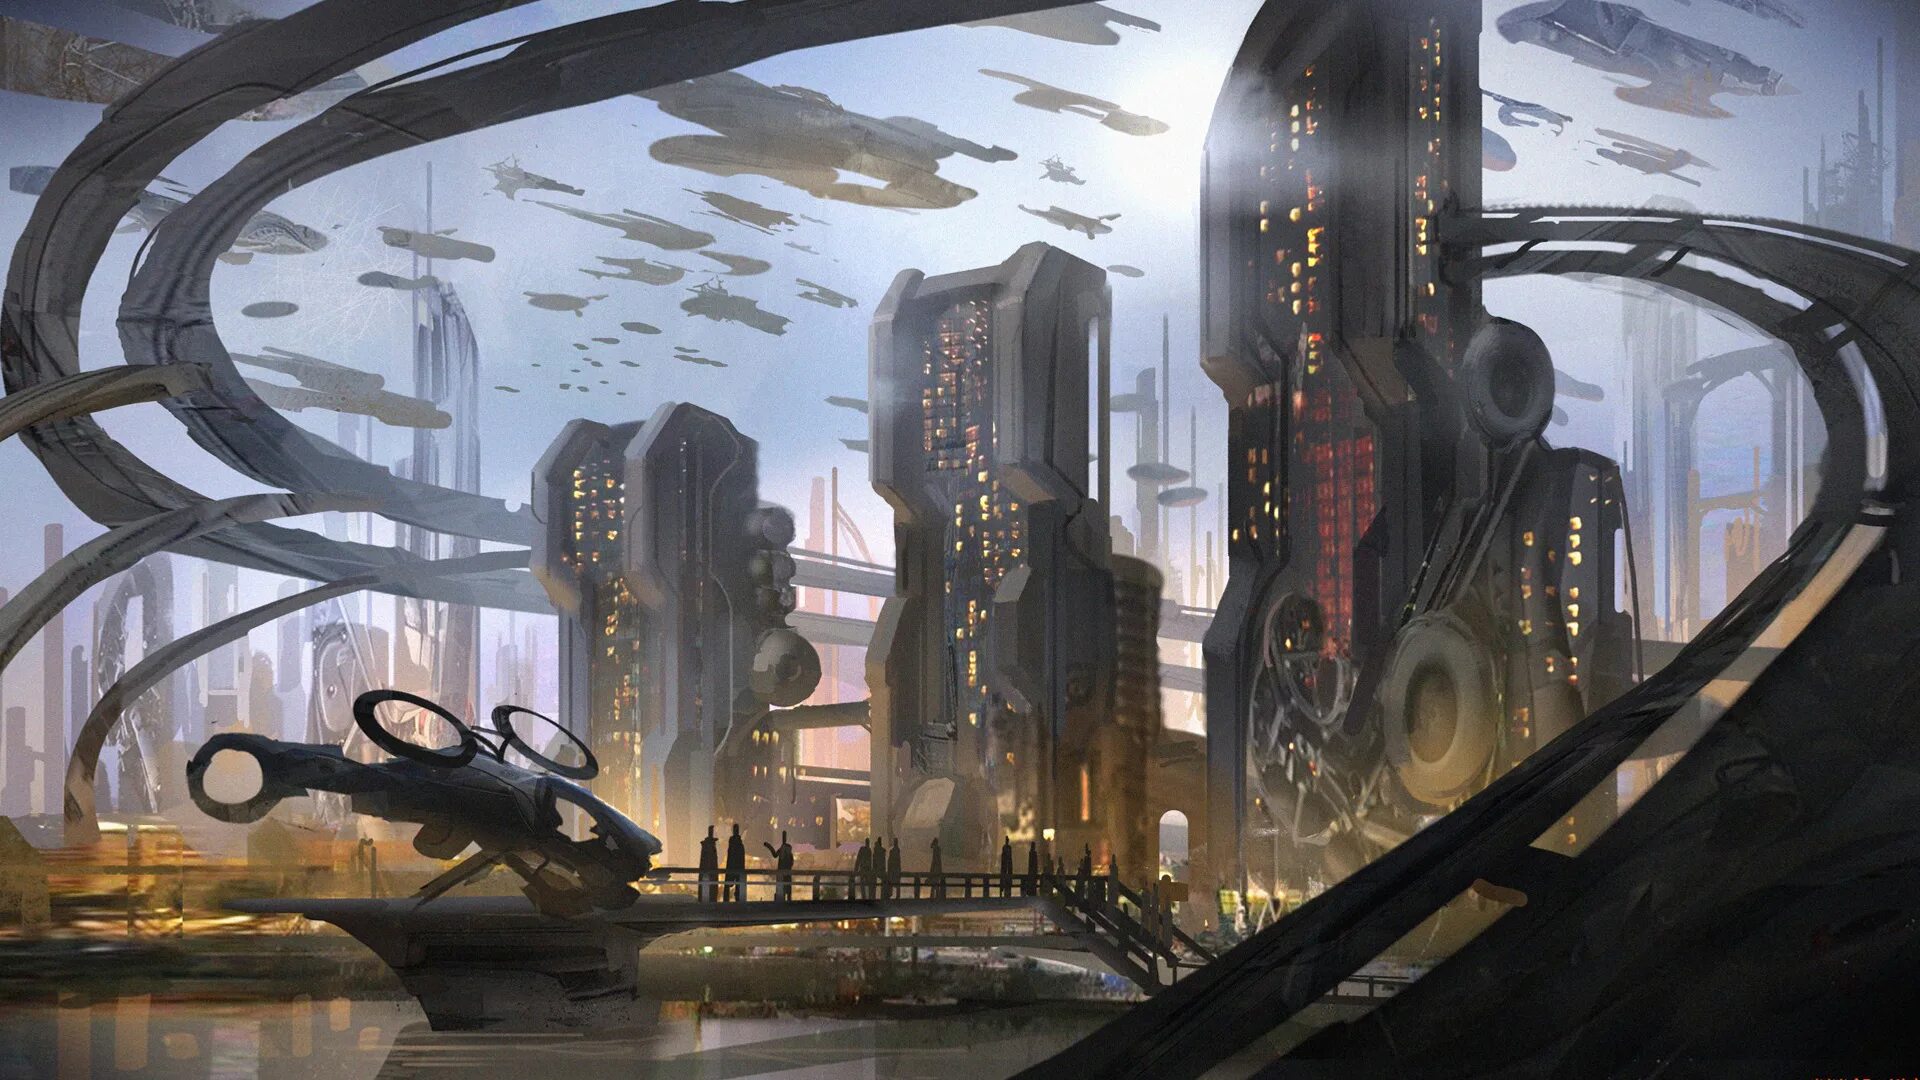 Другое будущее. Биопанк футуризм. Sci Fi город футуризм. Биопанк арт город. Sci-Fi Art город будущего.